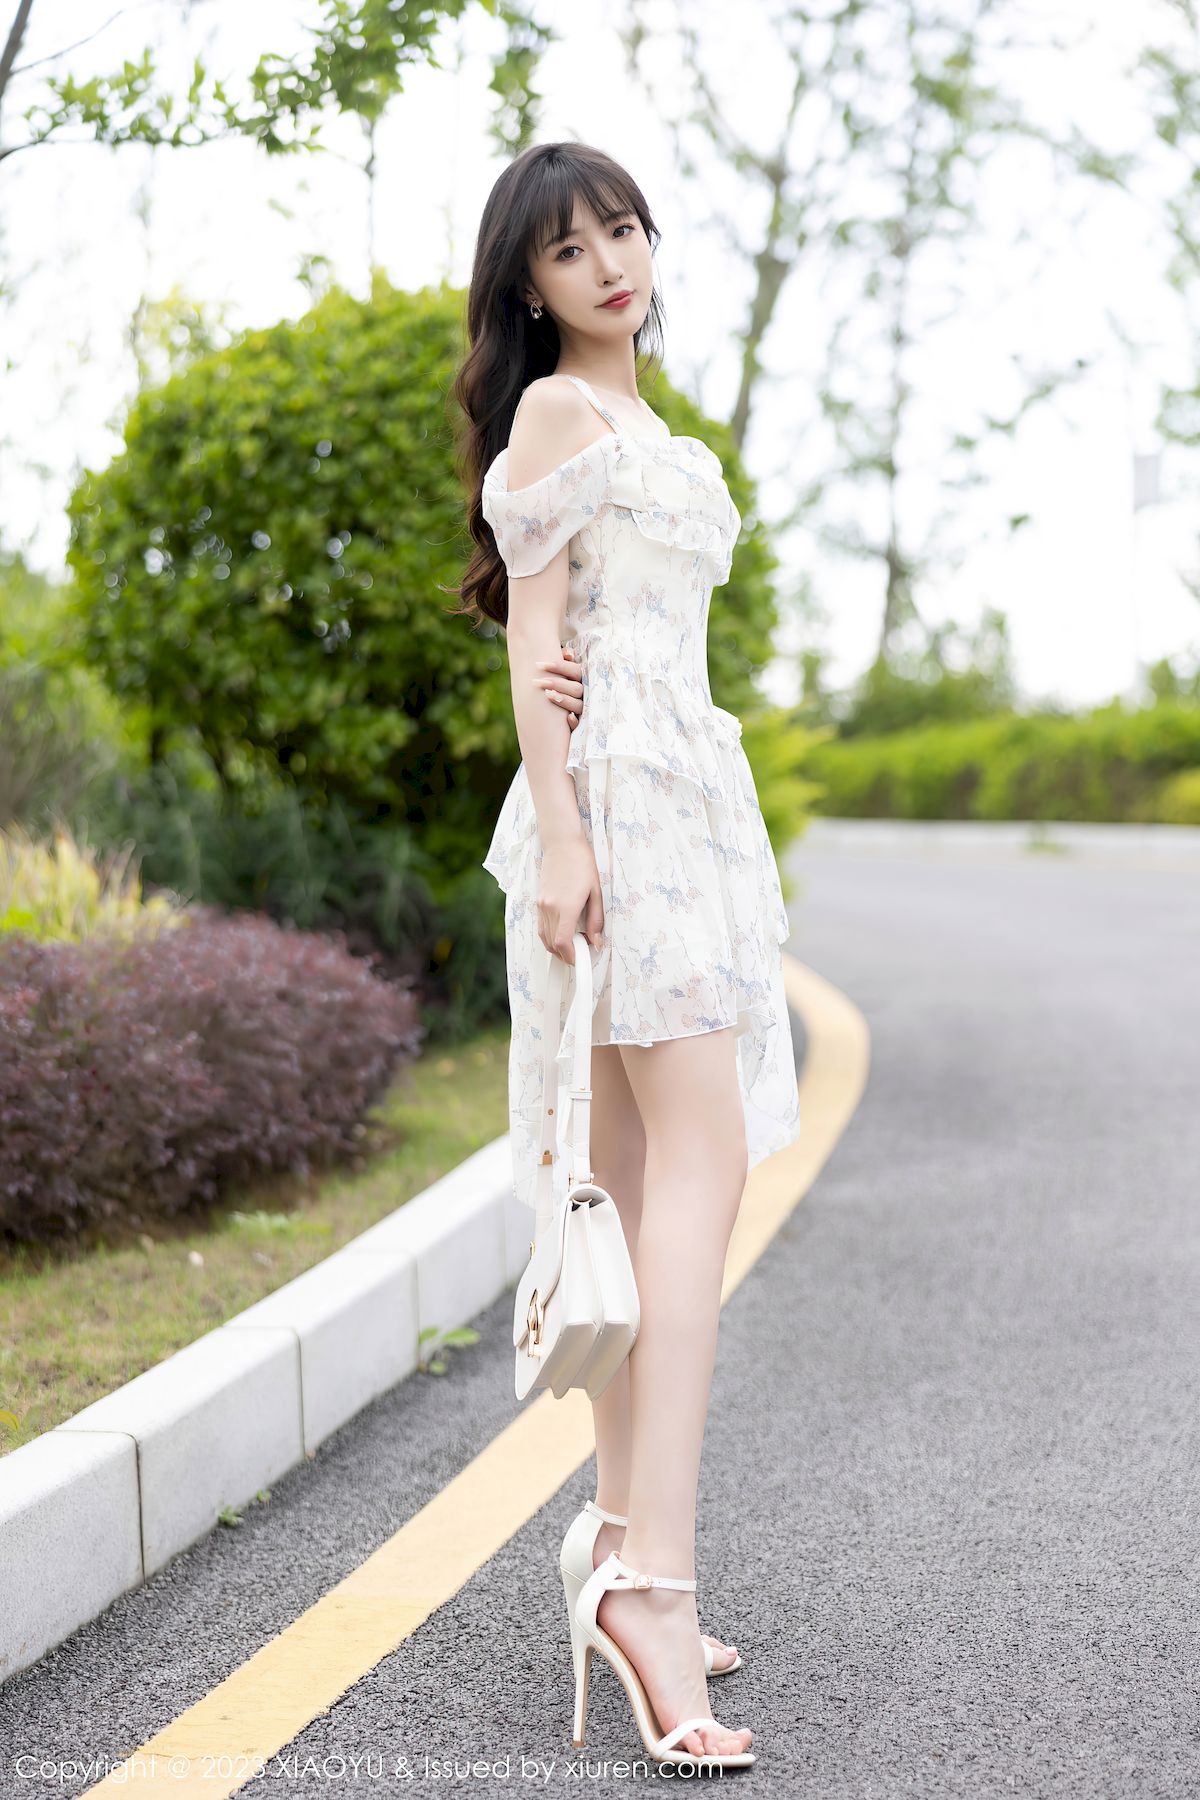 林星阑白色婚纱服饰搭配白色丝袜贵州旅拍